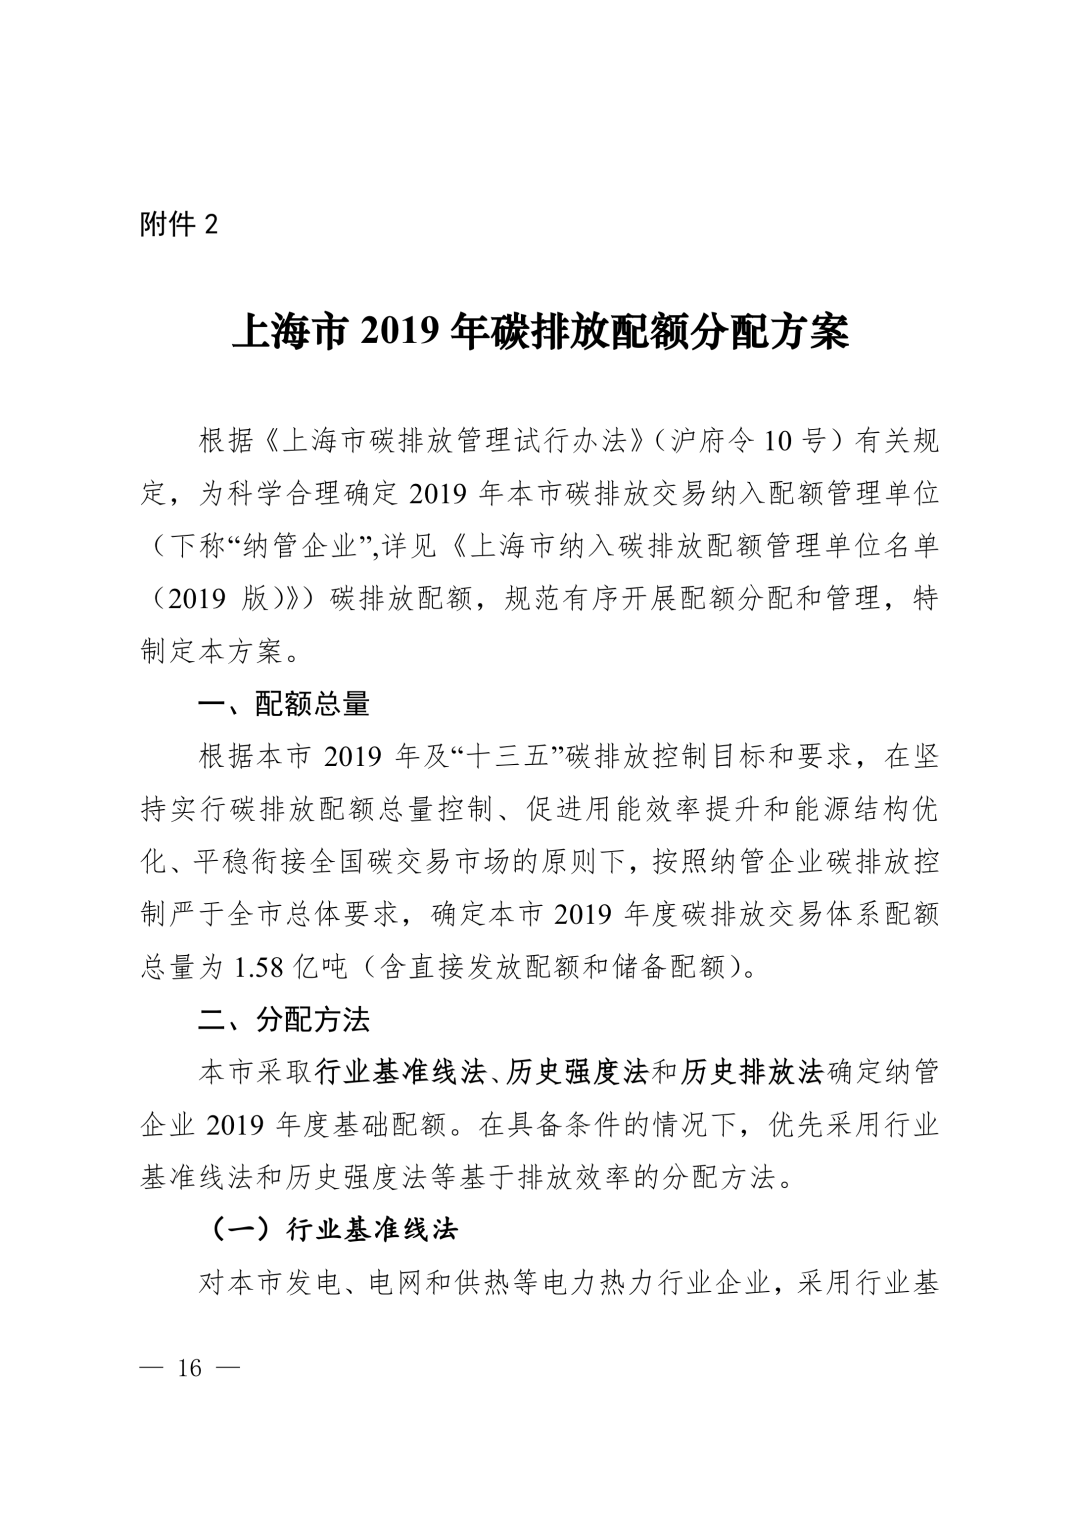 【关注】上海市生态环境局关于印发《上海市纳入碳排放配额管理单位名单（2019版）》及《上海市2019年碳排放配额分配方案》的通知(图16)